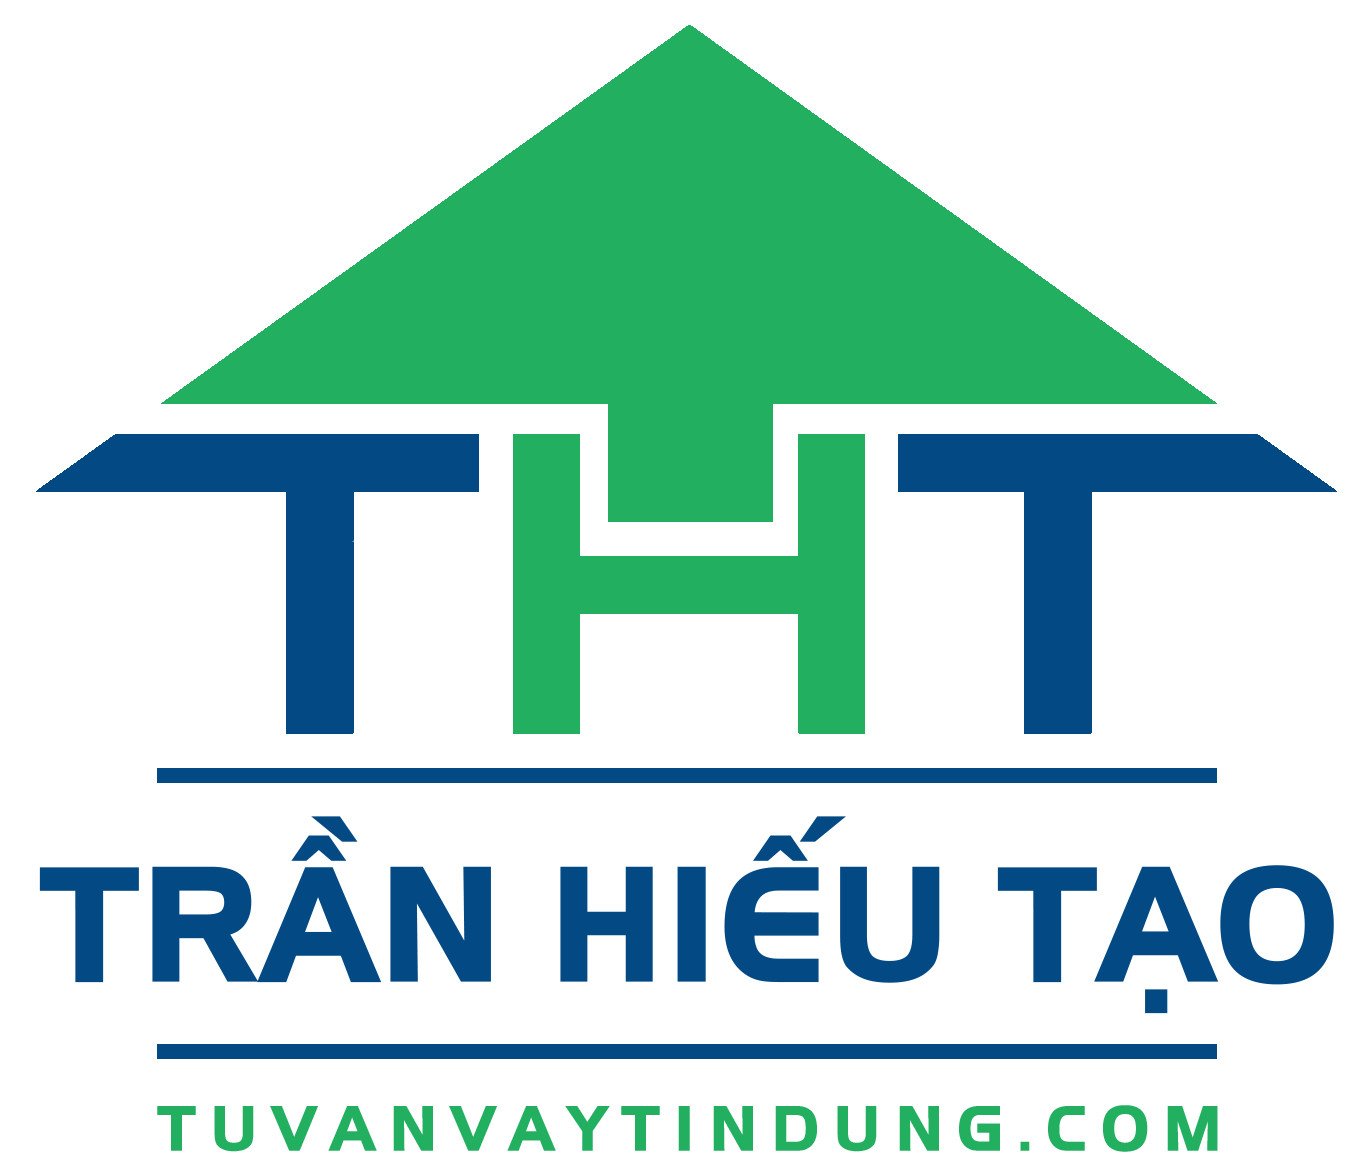 लोगो के Tuvanvaytindung ट्रॅन Hieu बनाया गया है की तरह एक घर है, और के साथ मेल खाता का नाम संक्षिप्त ट्रॅन Hieu बनाने